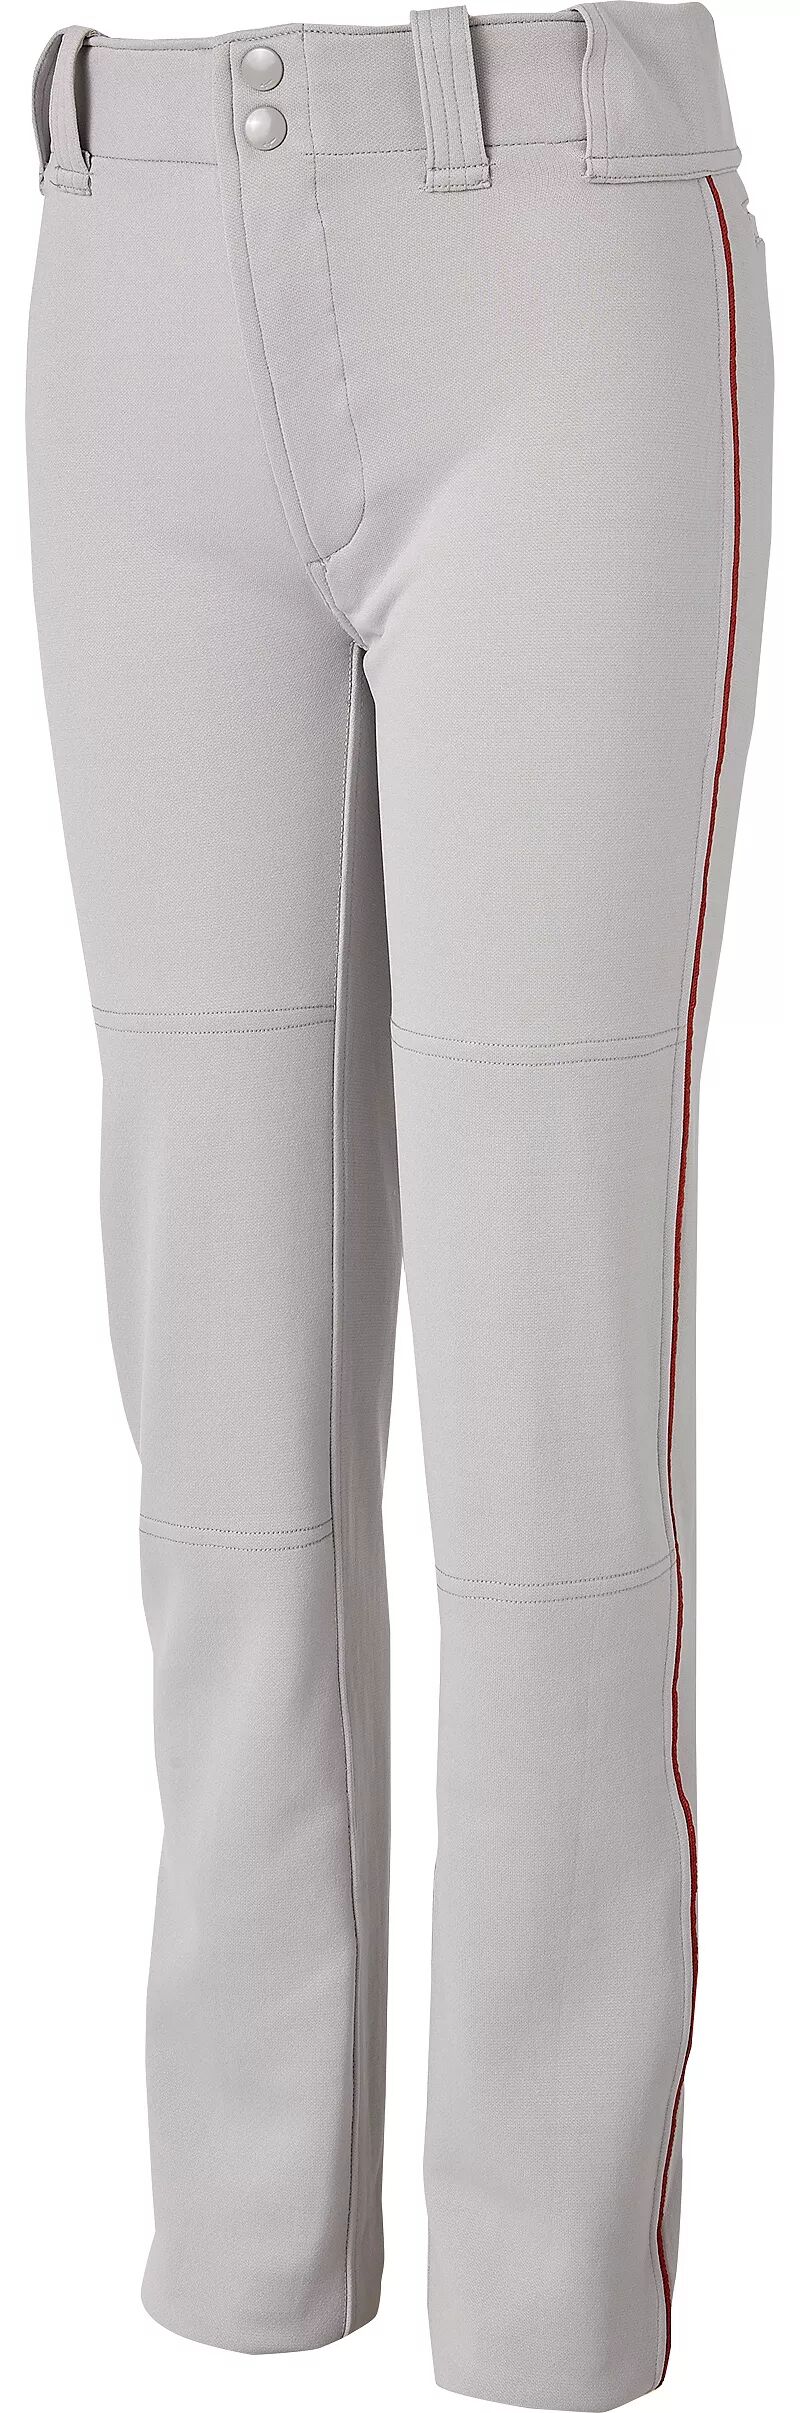 Мужские бейсбольные брюки Mizuno MVP Pro с окантовкой, серый/алый бейсбольные брюки 22